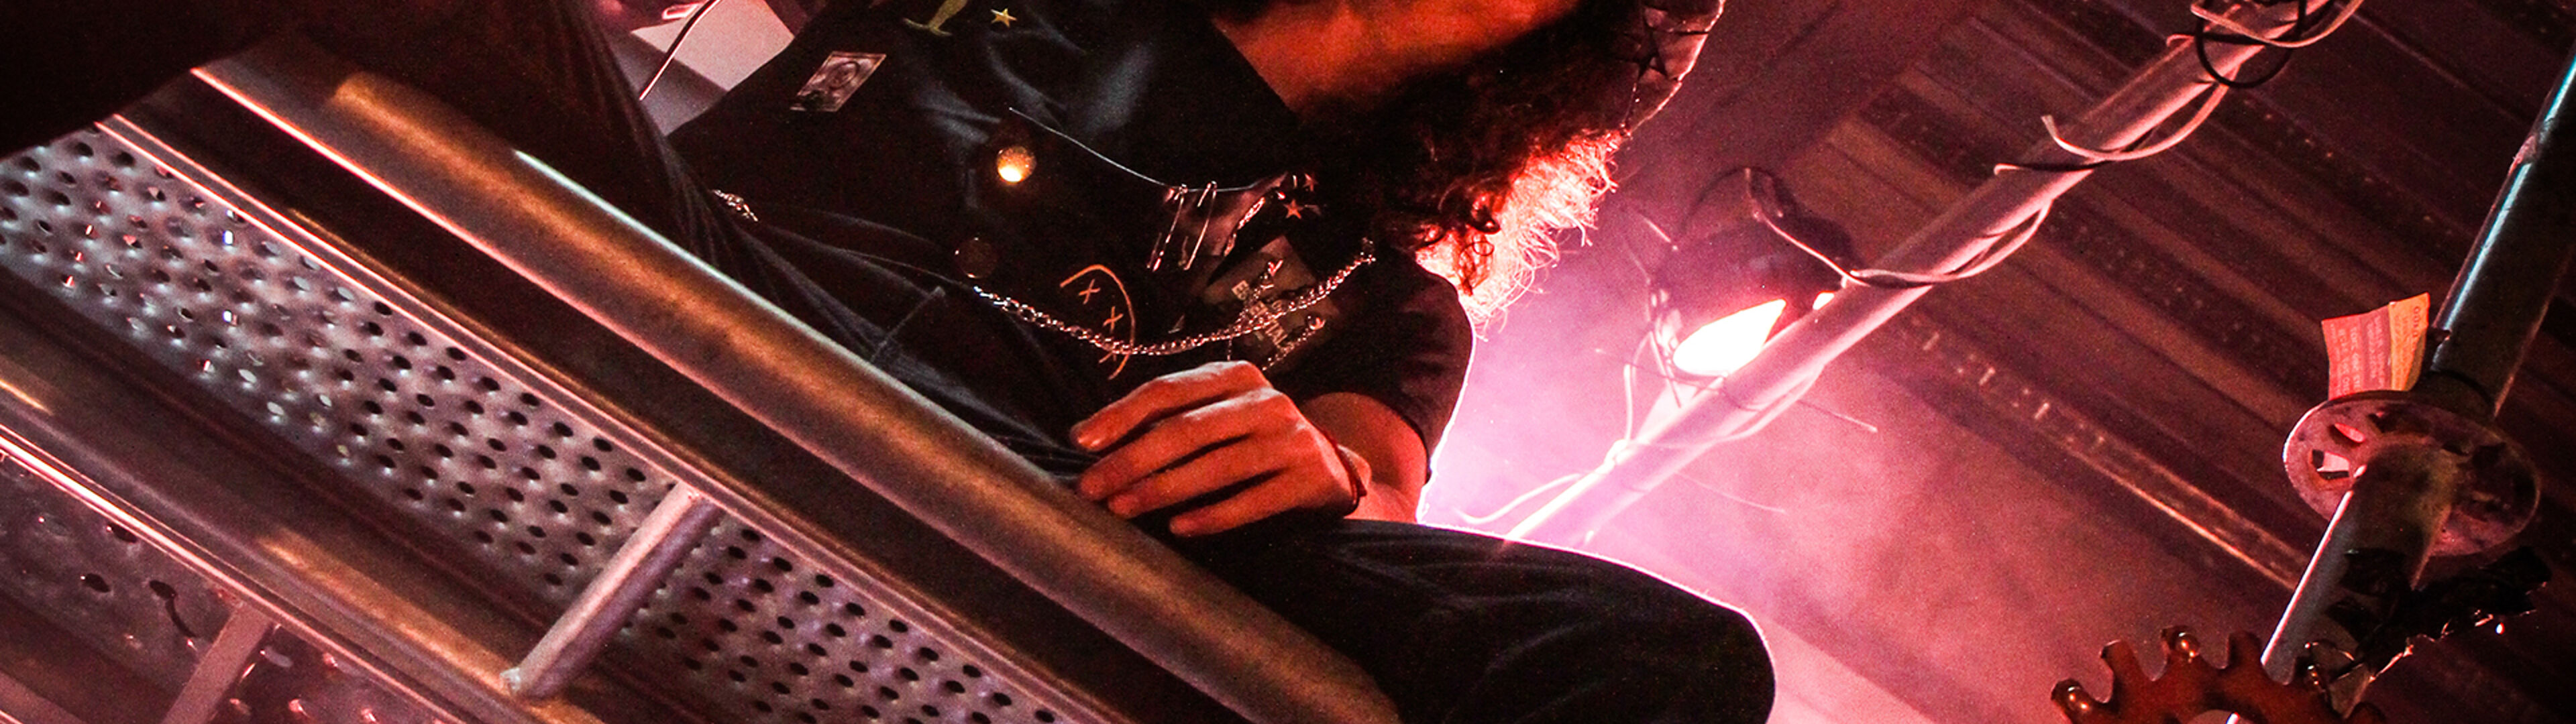 Músico con cabello rizado en un escenario iluminado por luces cálidas, rodeado de un entorno de temática industrial.